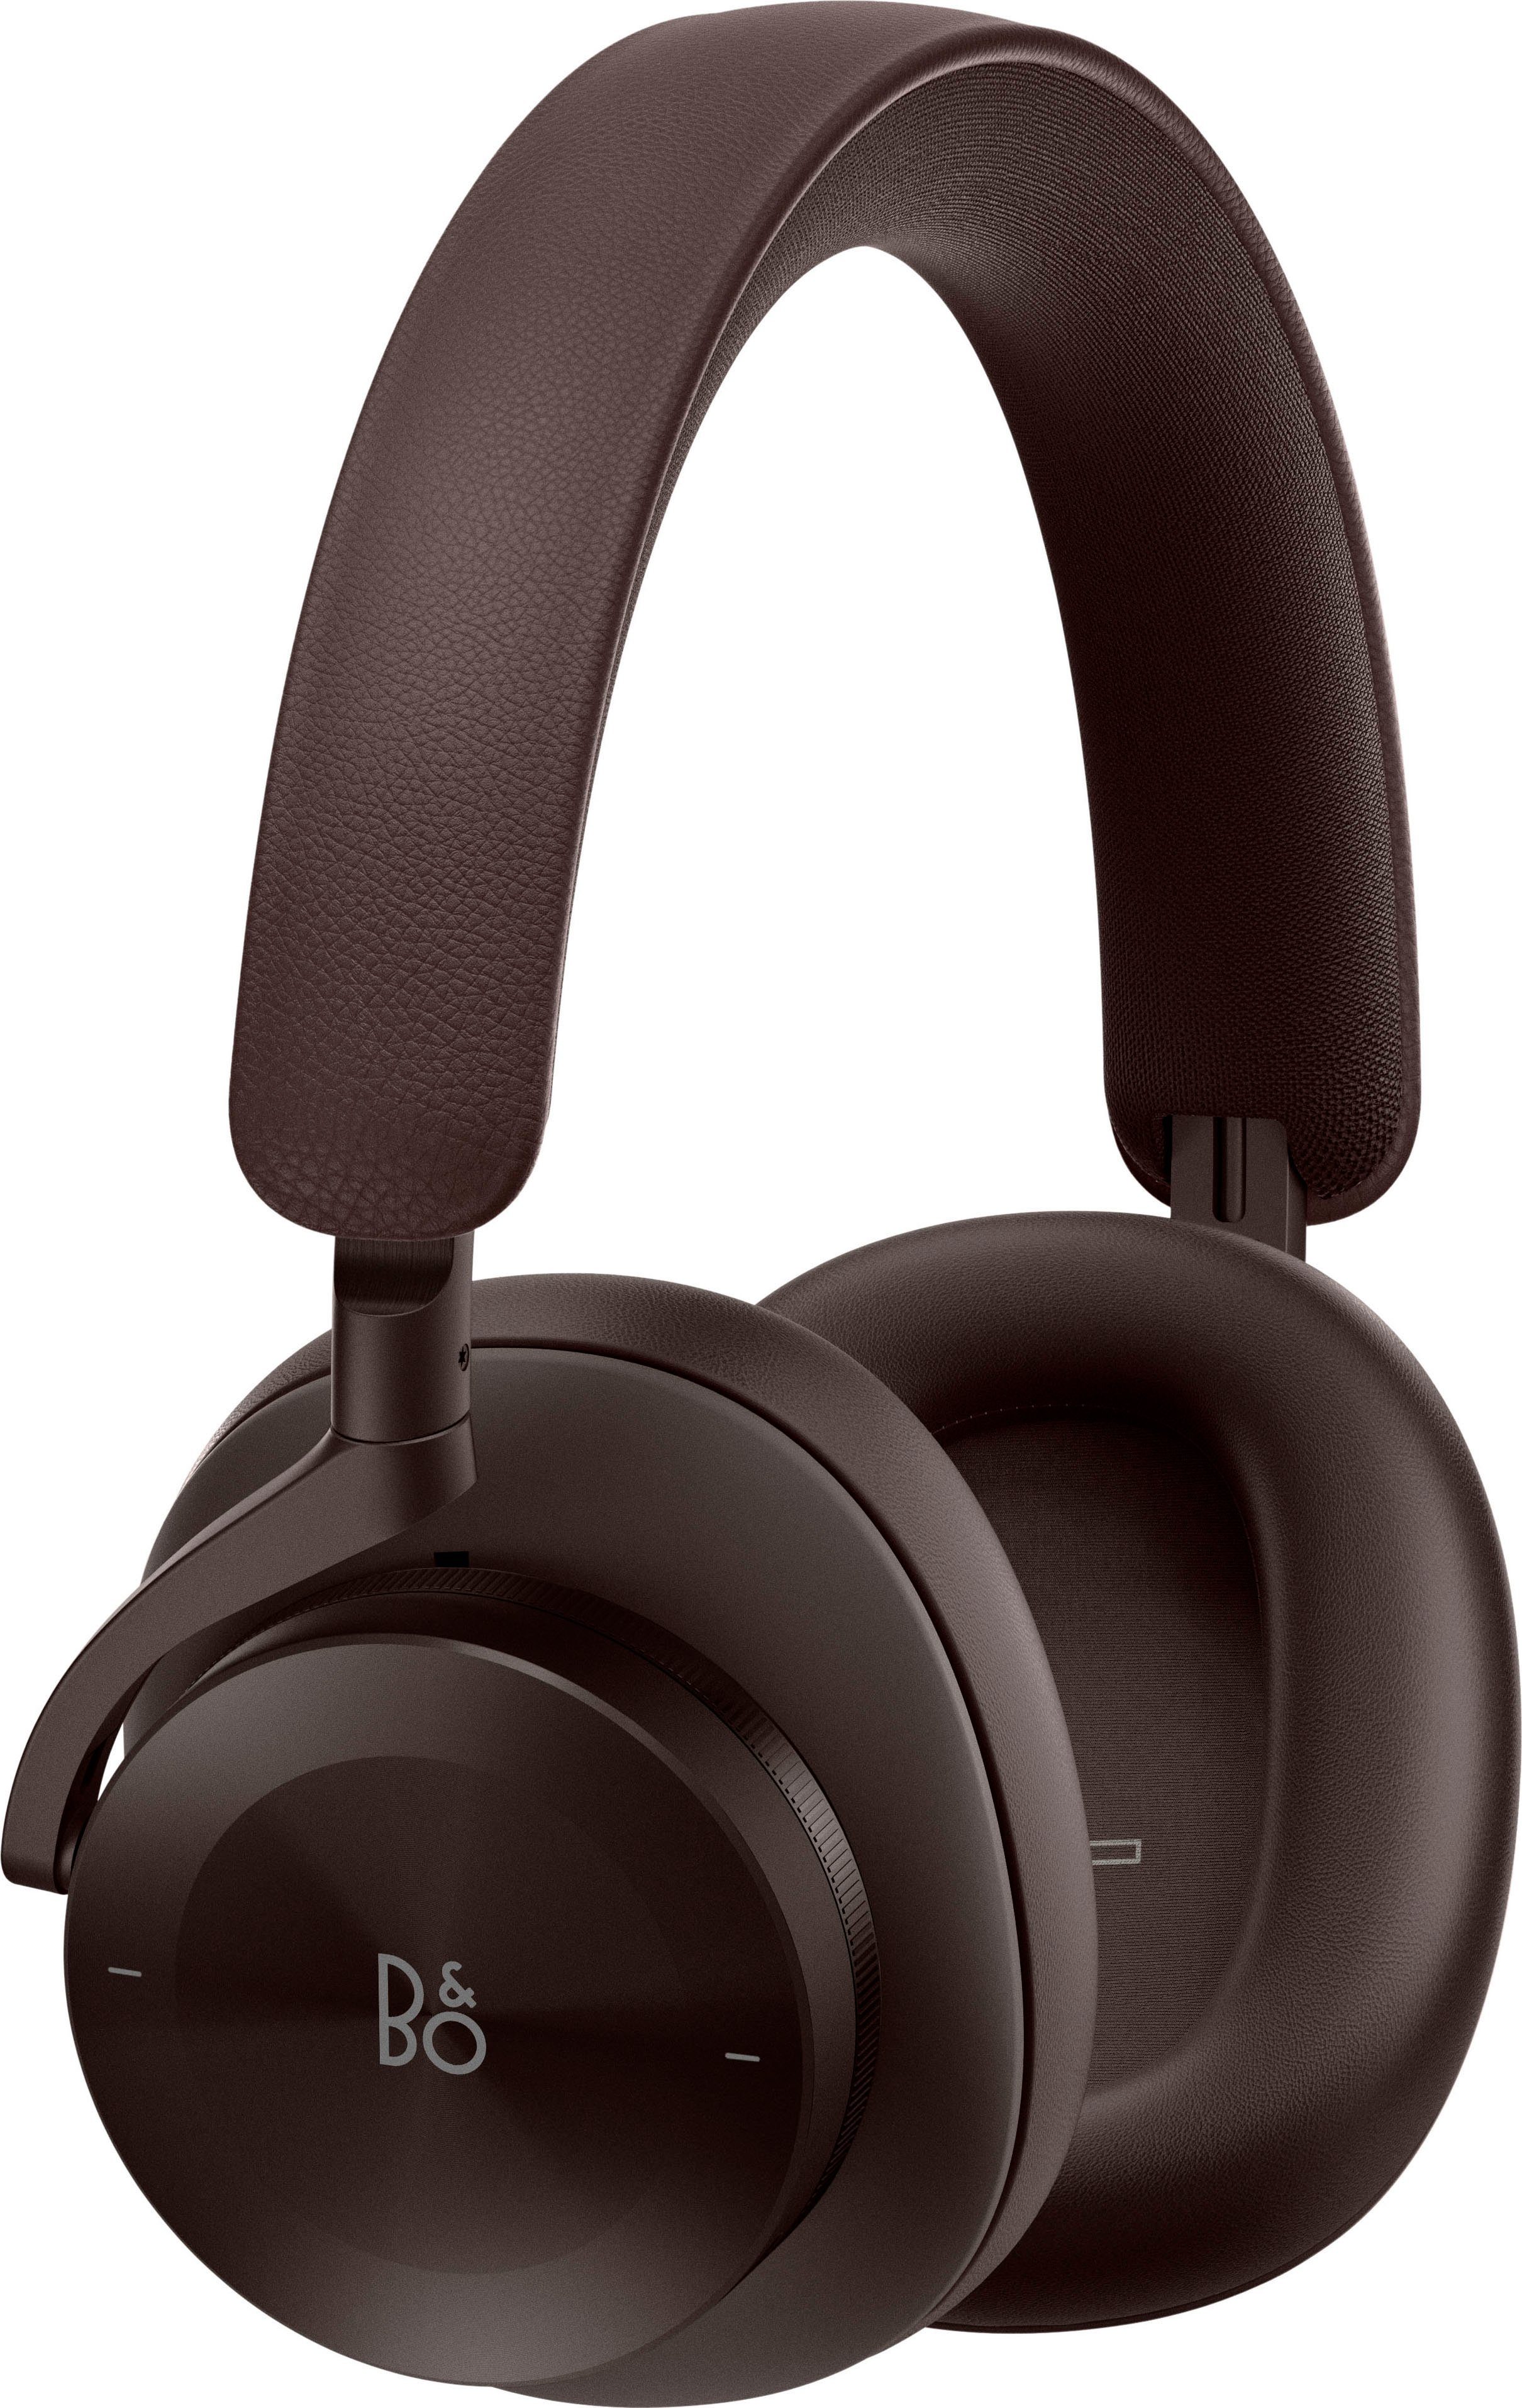 Bang & Olufsen Beoplay H95 Over-Ear-Kopfhörer (AN-Funktionen, Active Noise Cancelling (ANC), Freisprechfunktion, Geräuschisolierung, LED Ladestandsanzeige, Sprachsteuerung, Transparenzmodus, Bluetooth) braun | Over-Ear-Kopfhörer